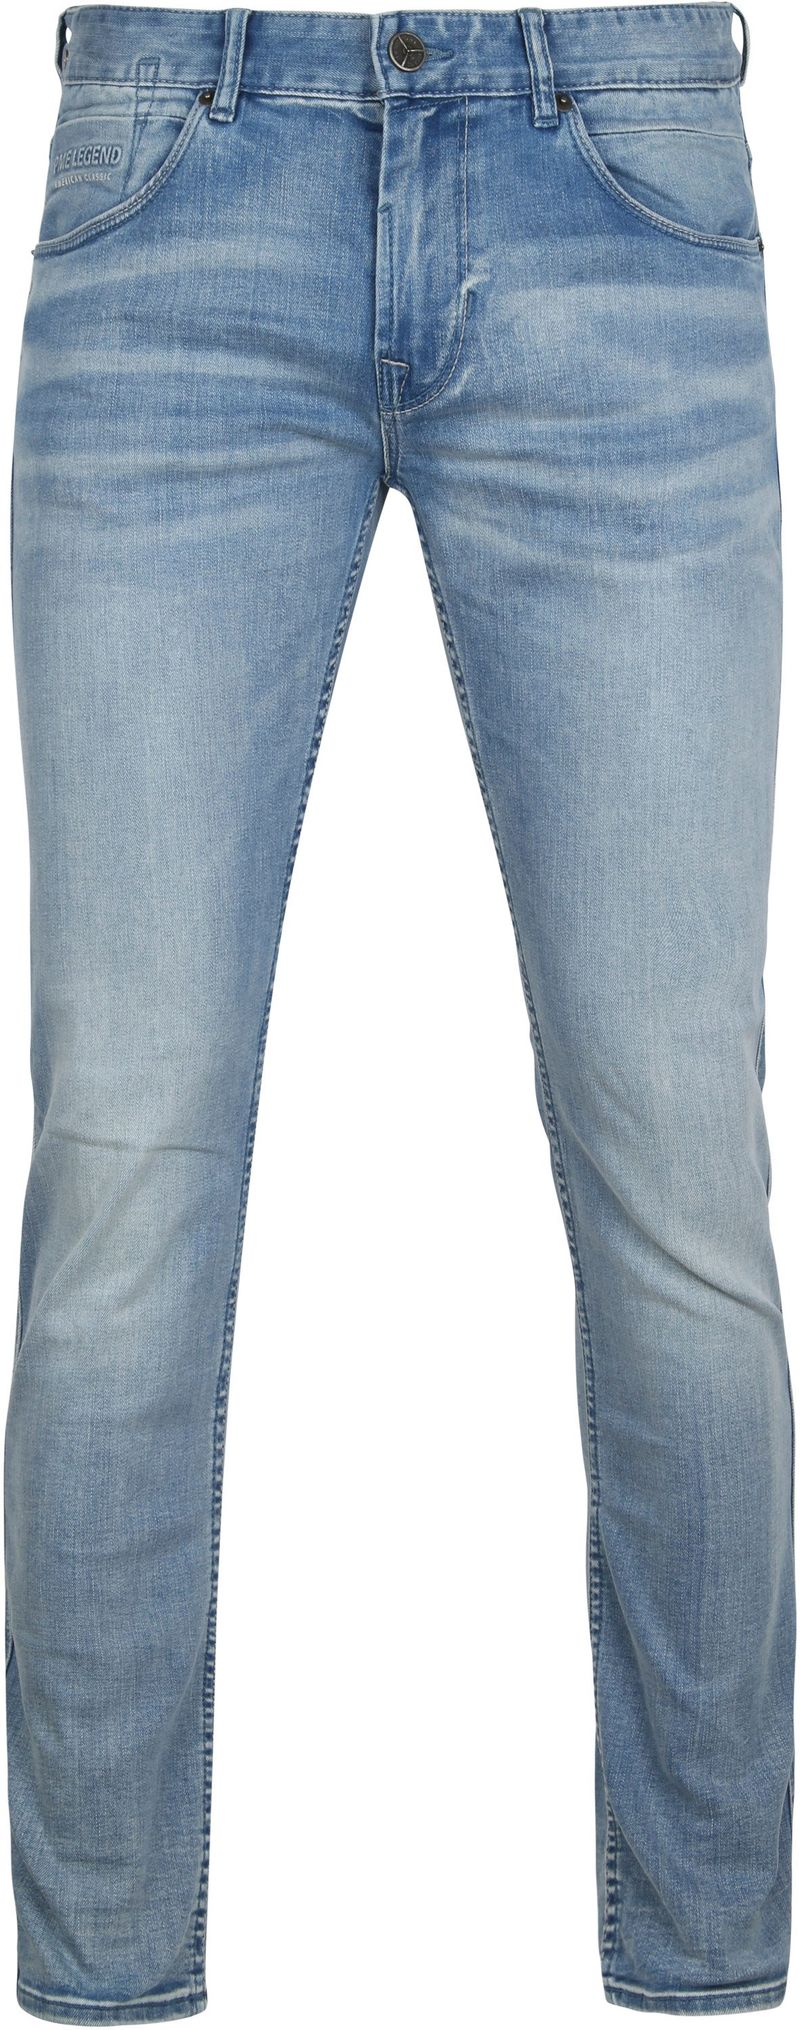 PME Legend Nightflight Jeans Blau - Größe W 38 - L 34 günstig online kaufen